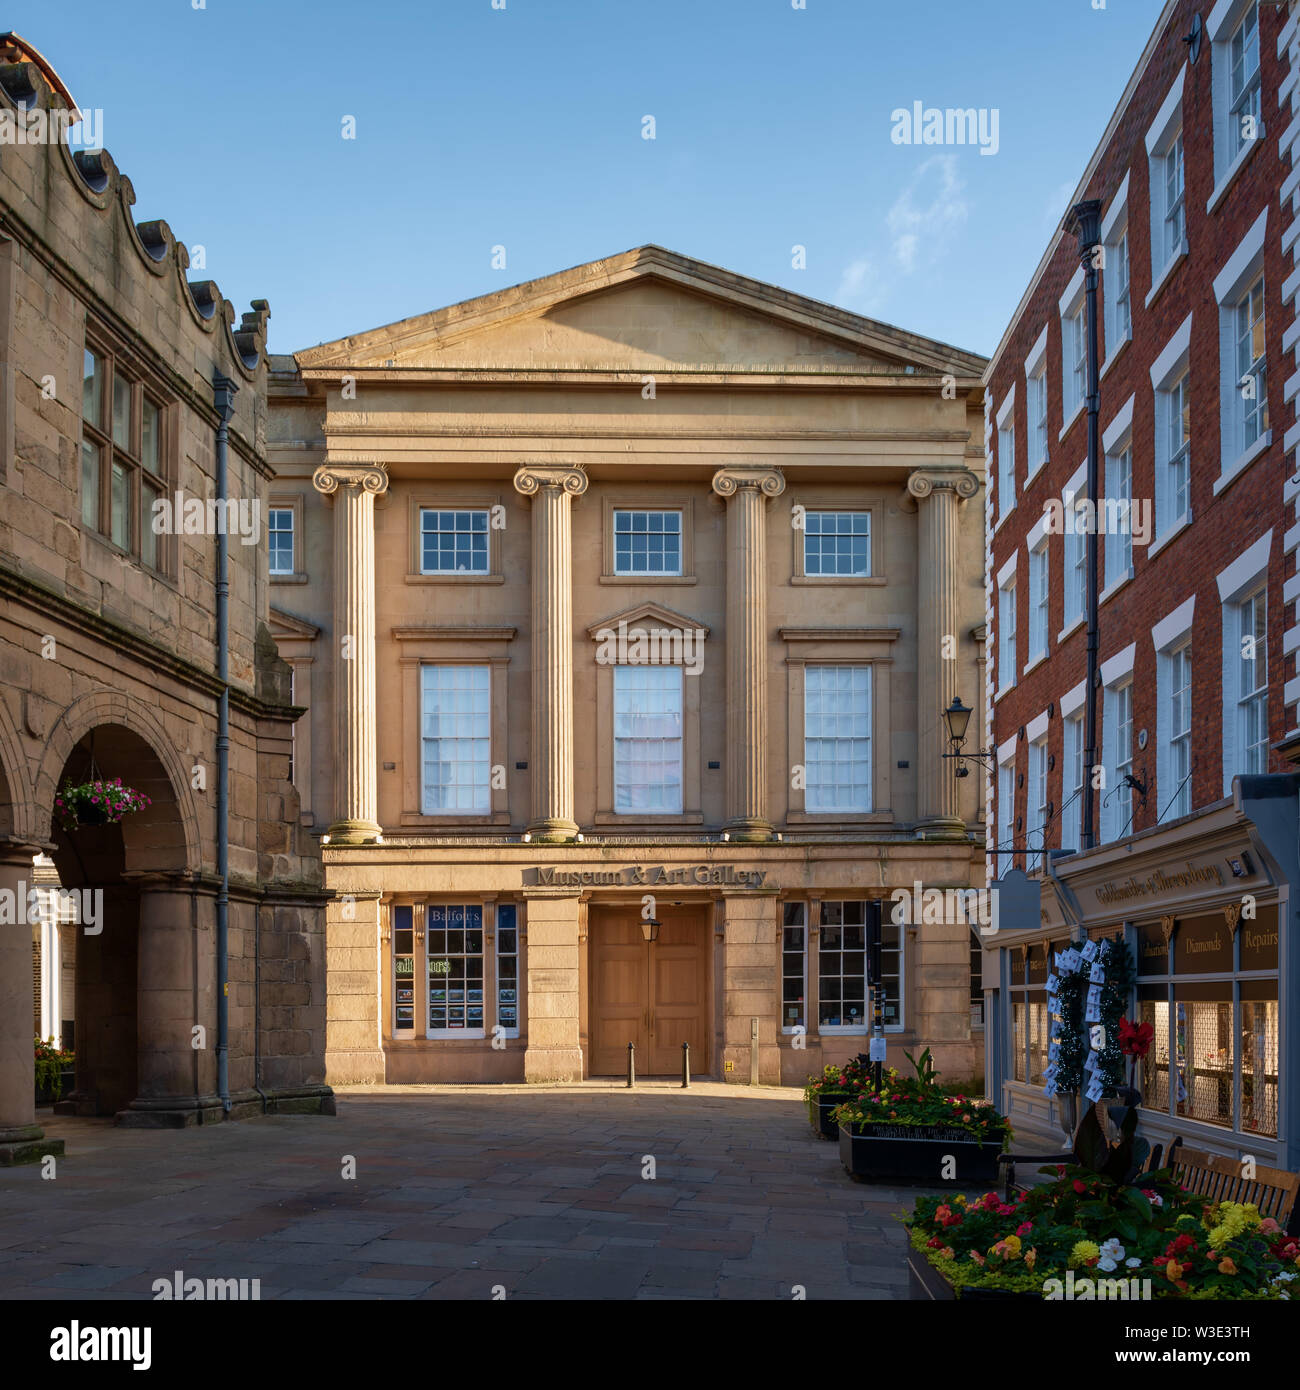 Shrewsbury Museum & Art Gallery, Shropshire, UK Stock Photo